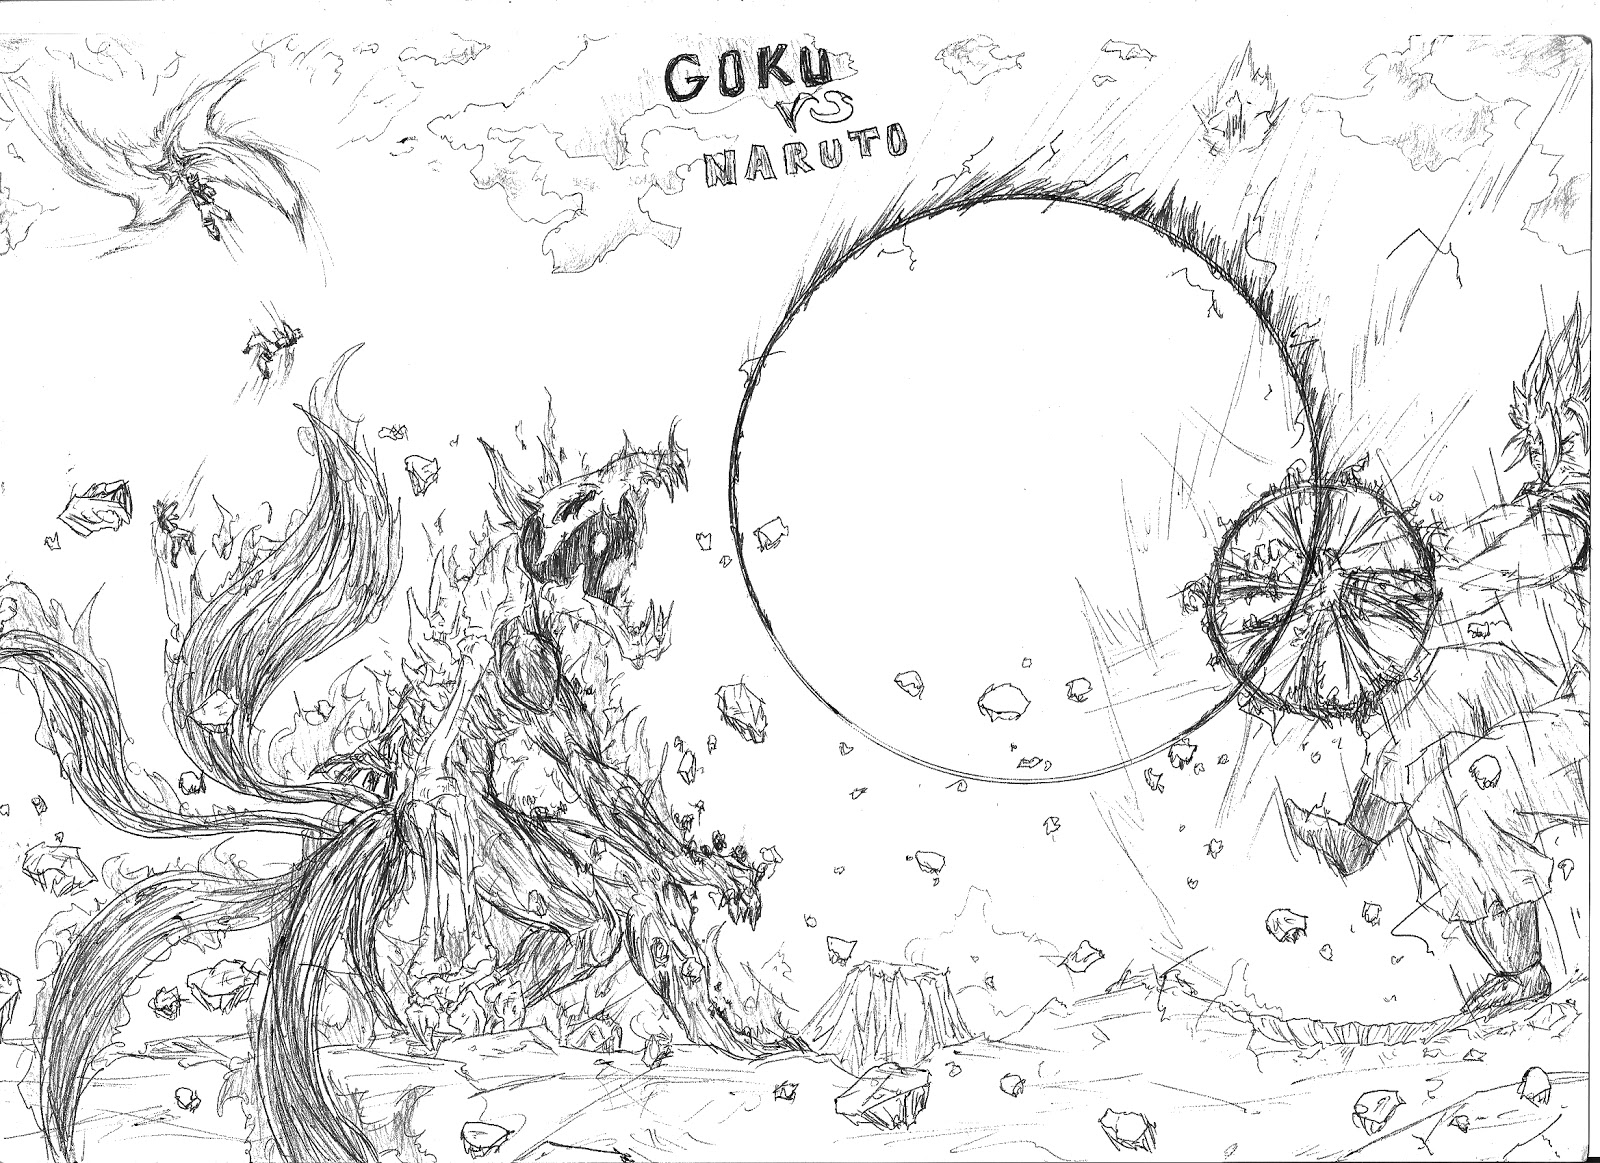 Imagenes para dibujar de Naruto y goku - Imagui